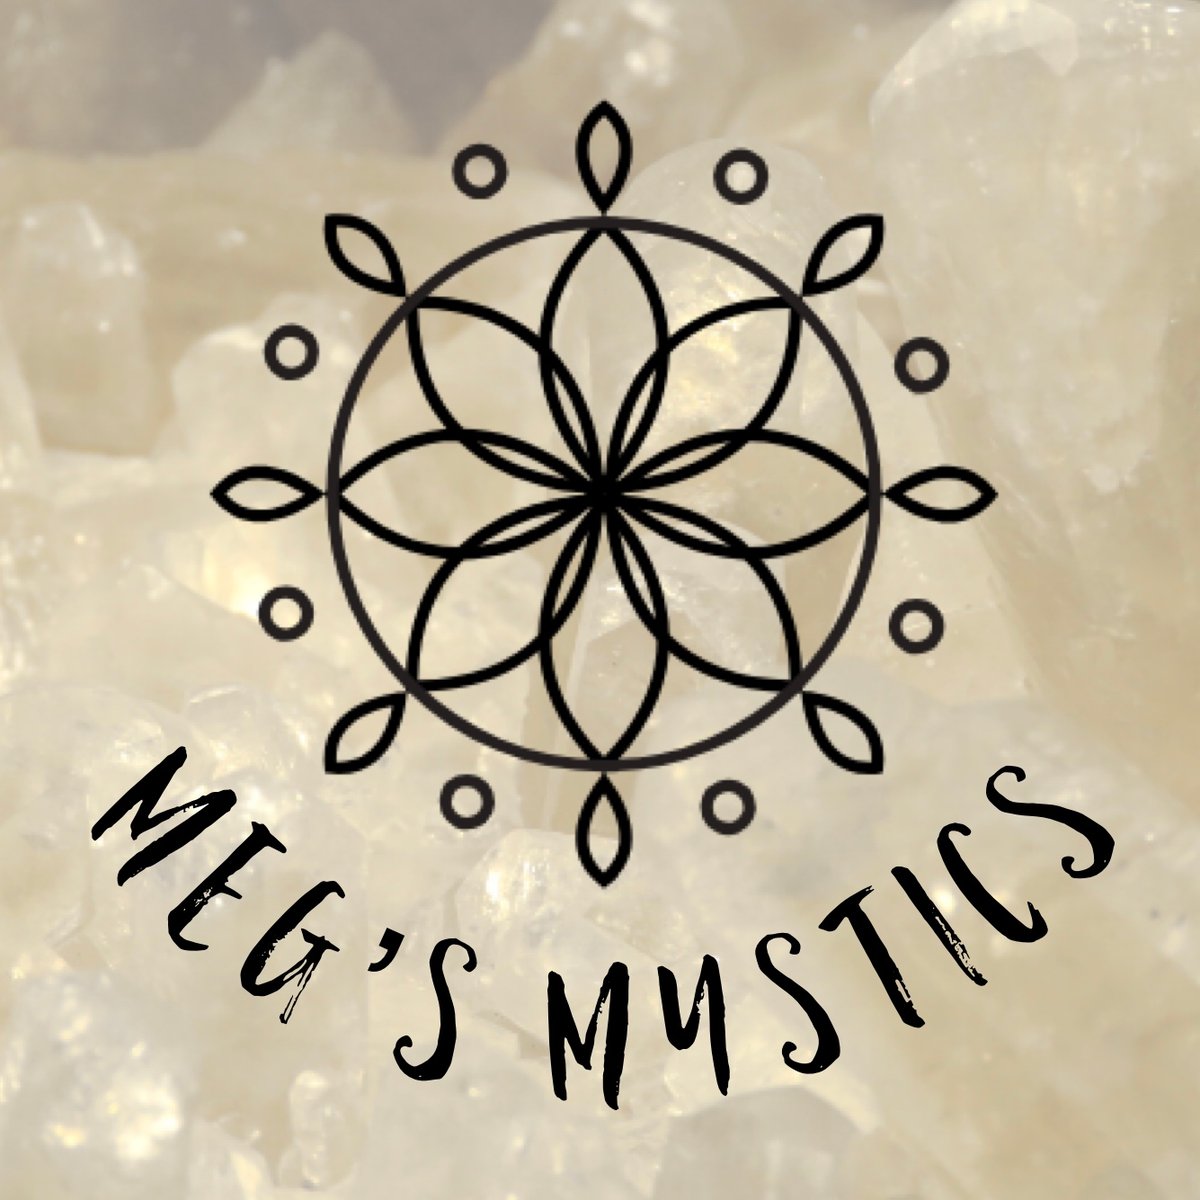 Meg's Mystics